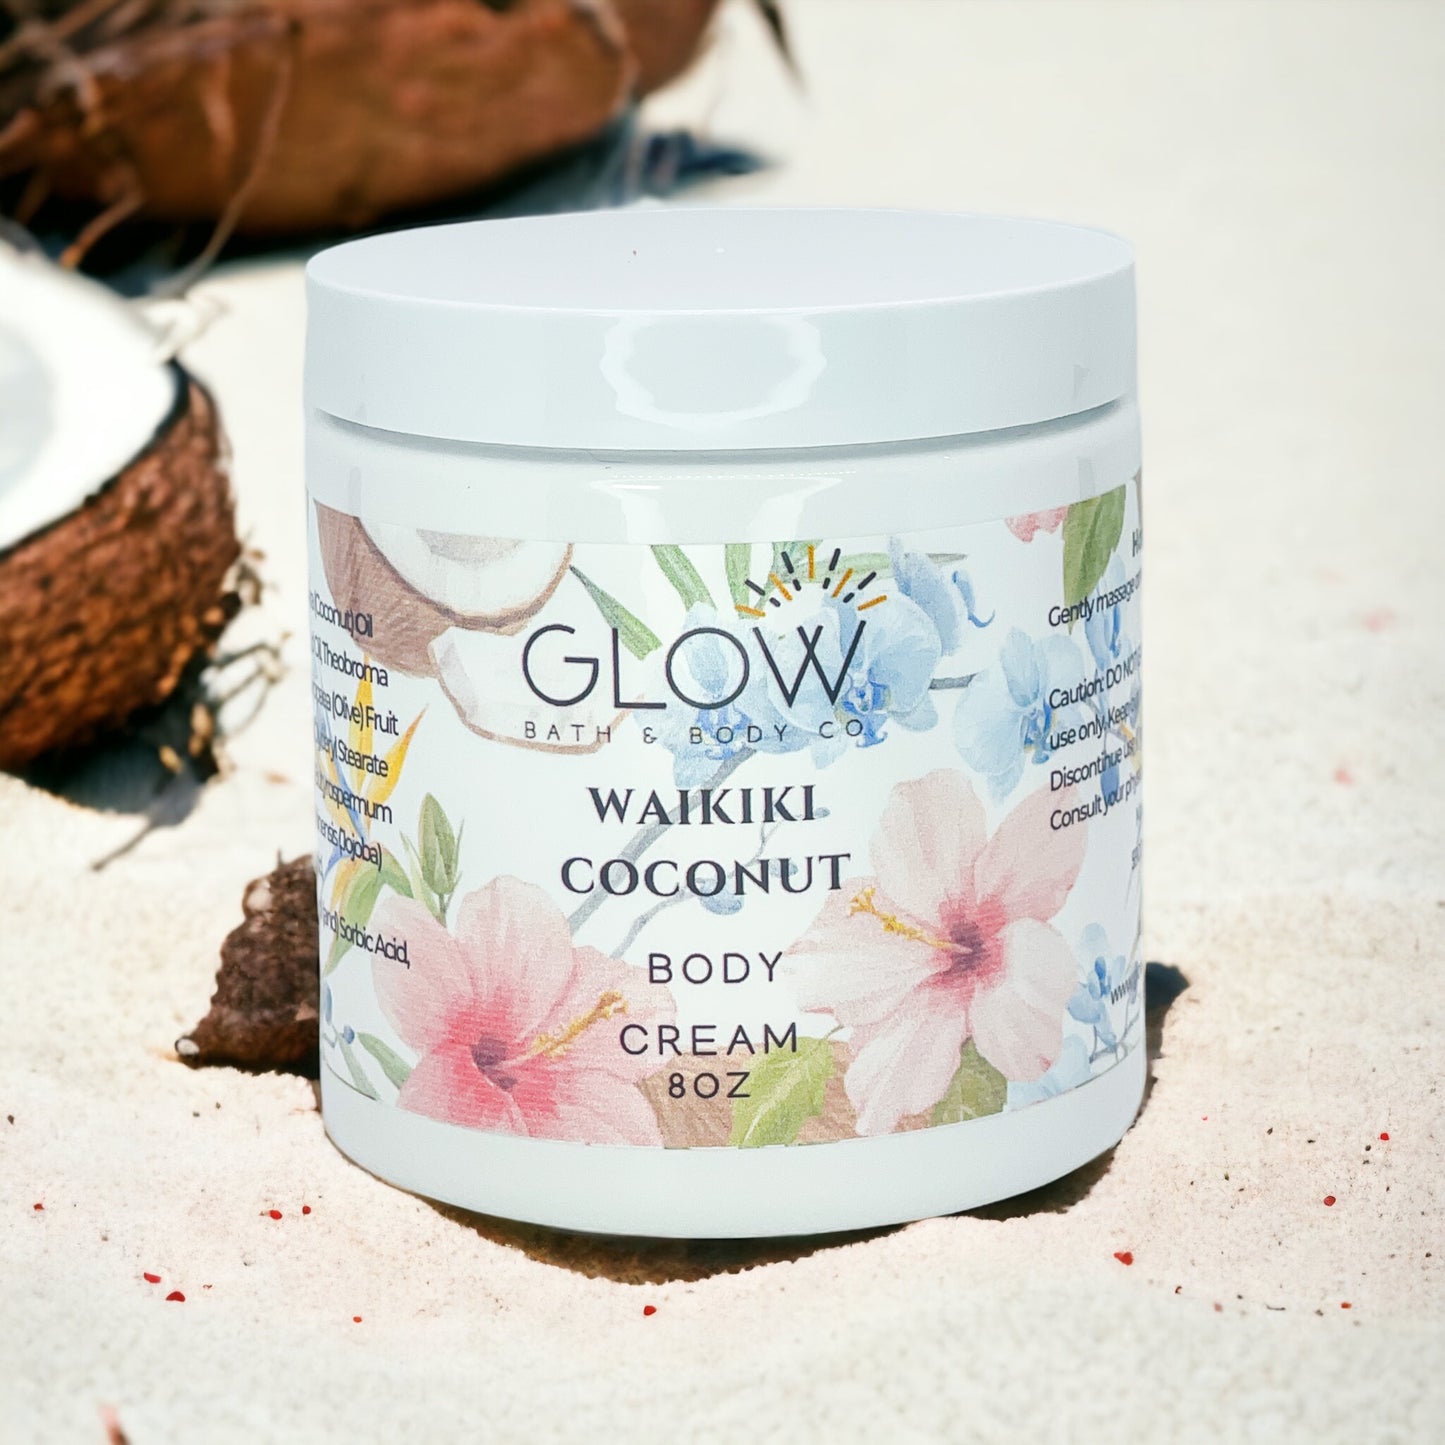 Waikiki Coconut Body Cream